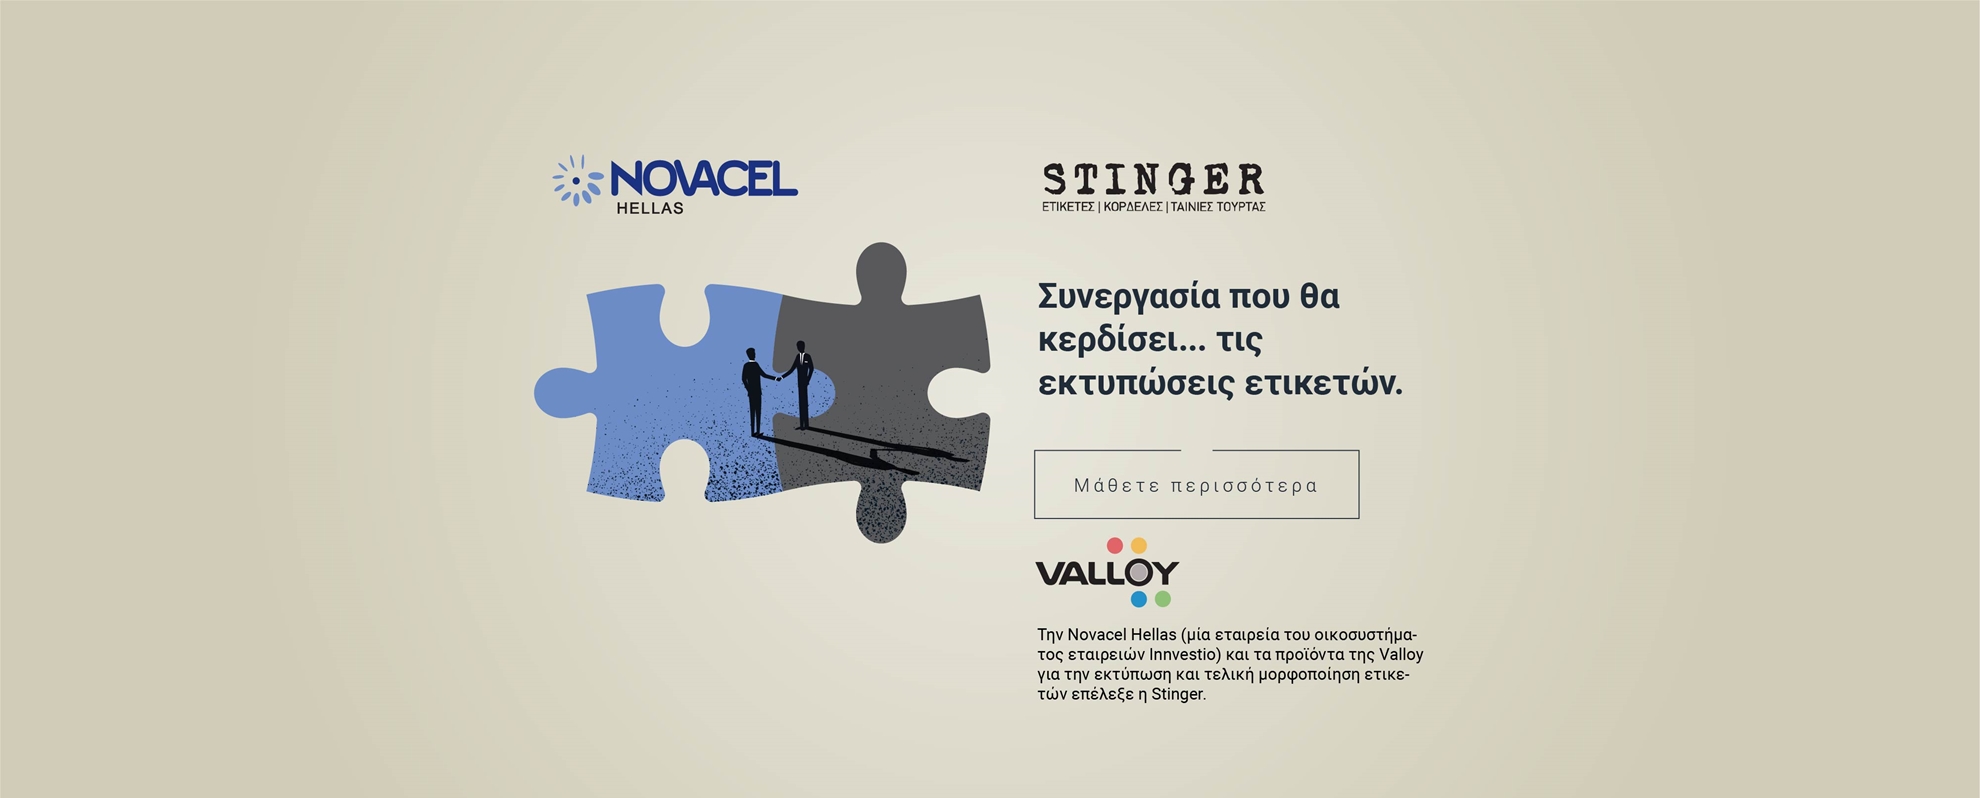 Δελτίο τύπου: Ένα ακόμα έργο της Novacel Hellas, για λογαριασμό της Stinger